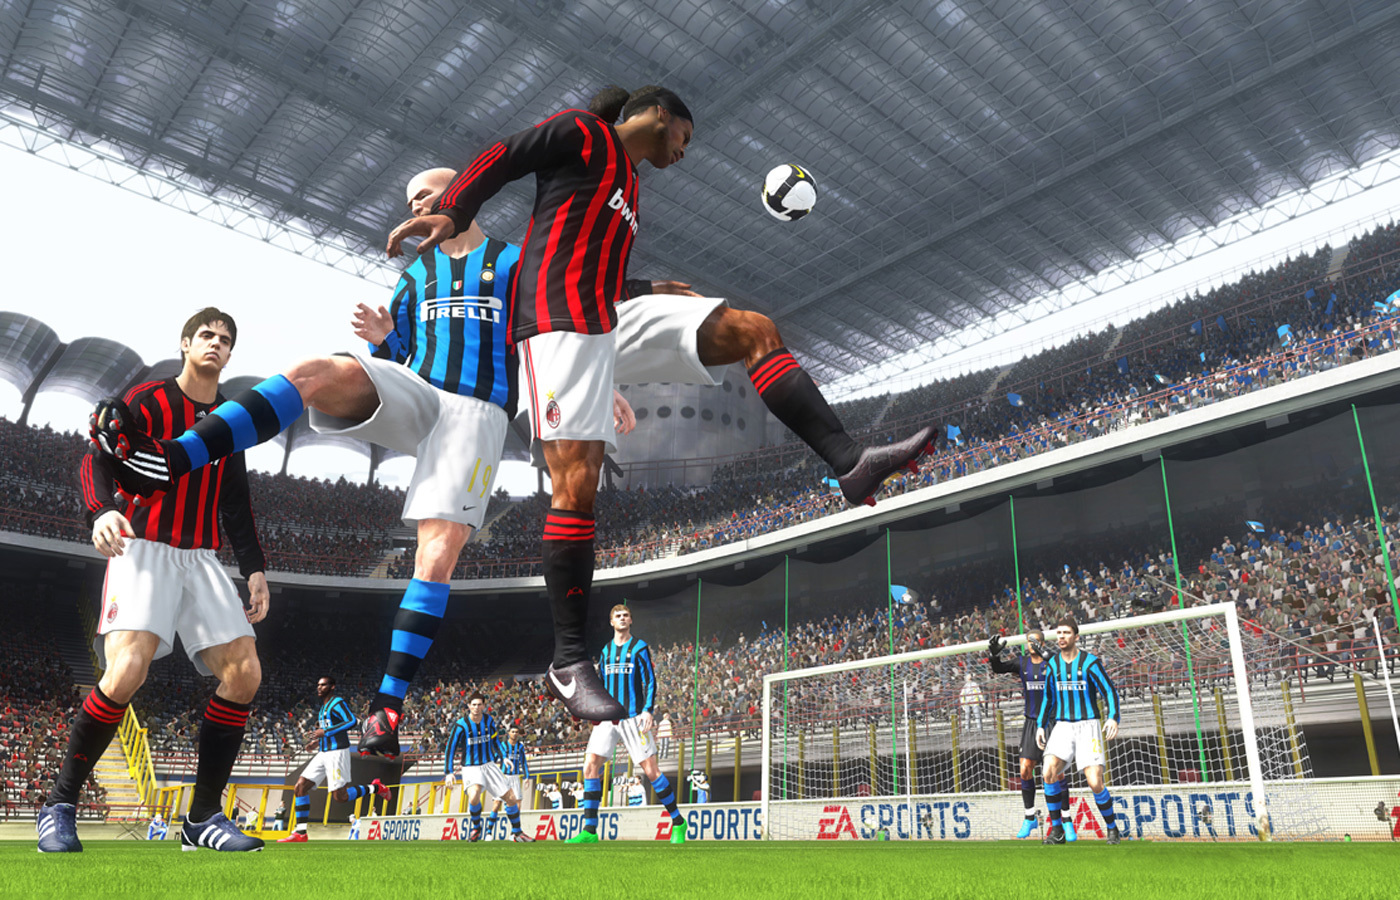 12) FIFA 10 (2009, PS3/Xbox 360)